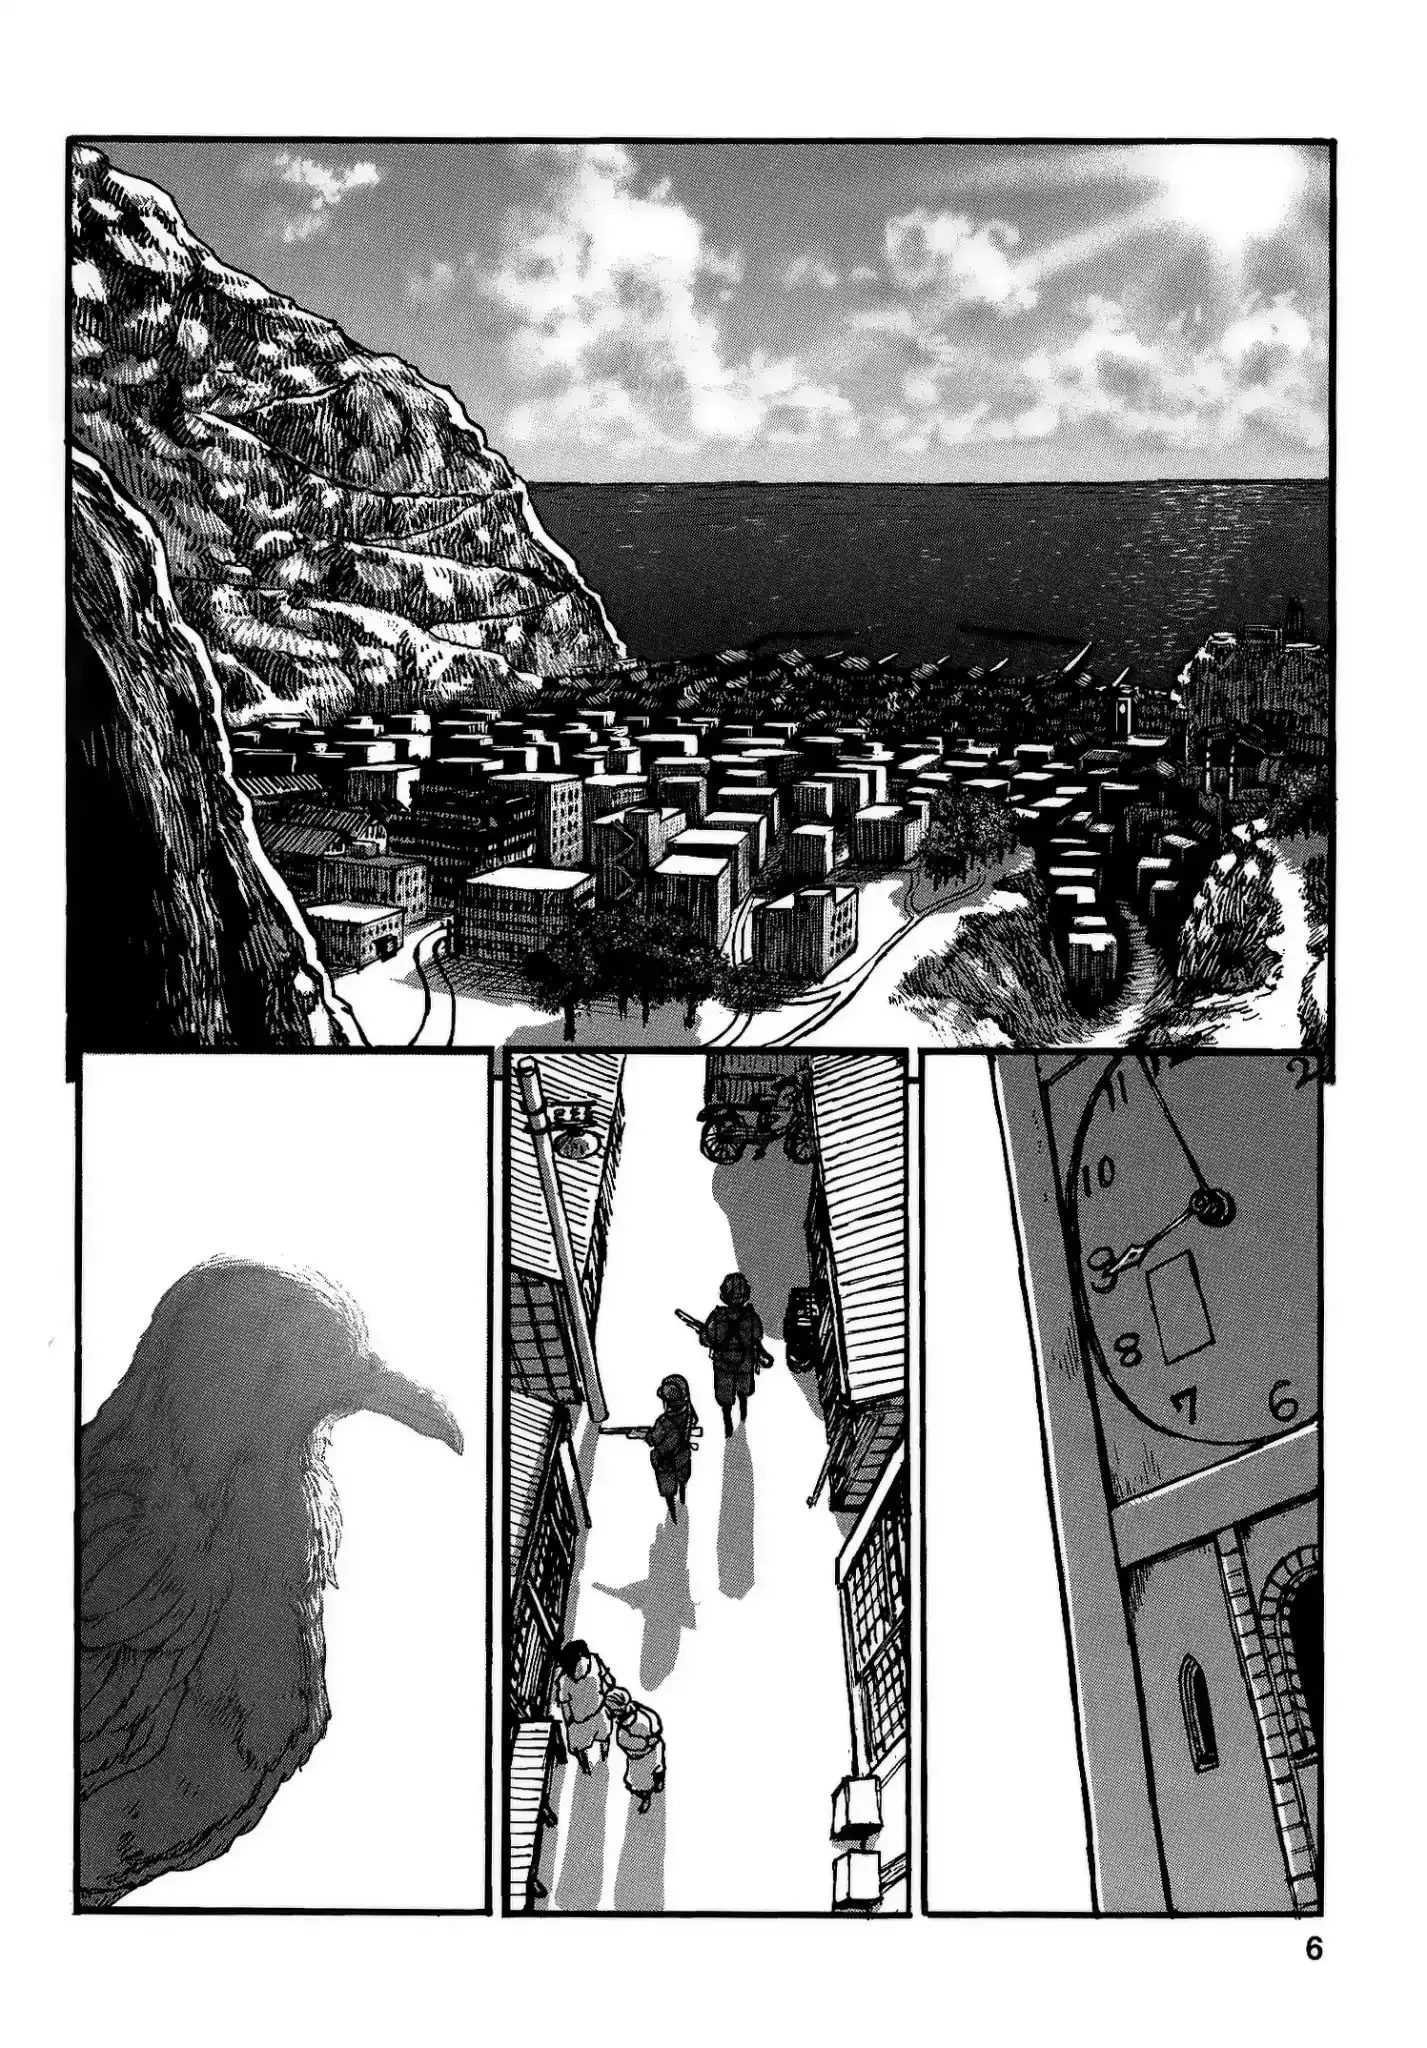 Groundless - Sekigan No Sogekihei - 19 page 8-0c6adae3